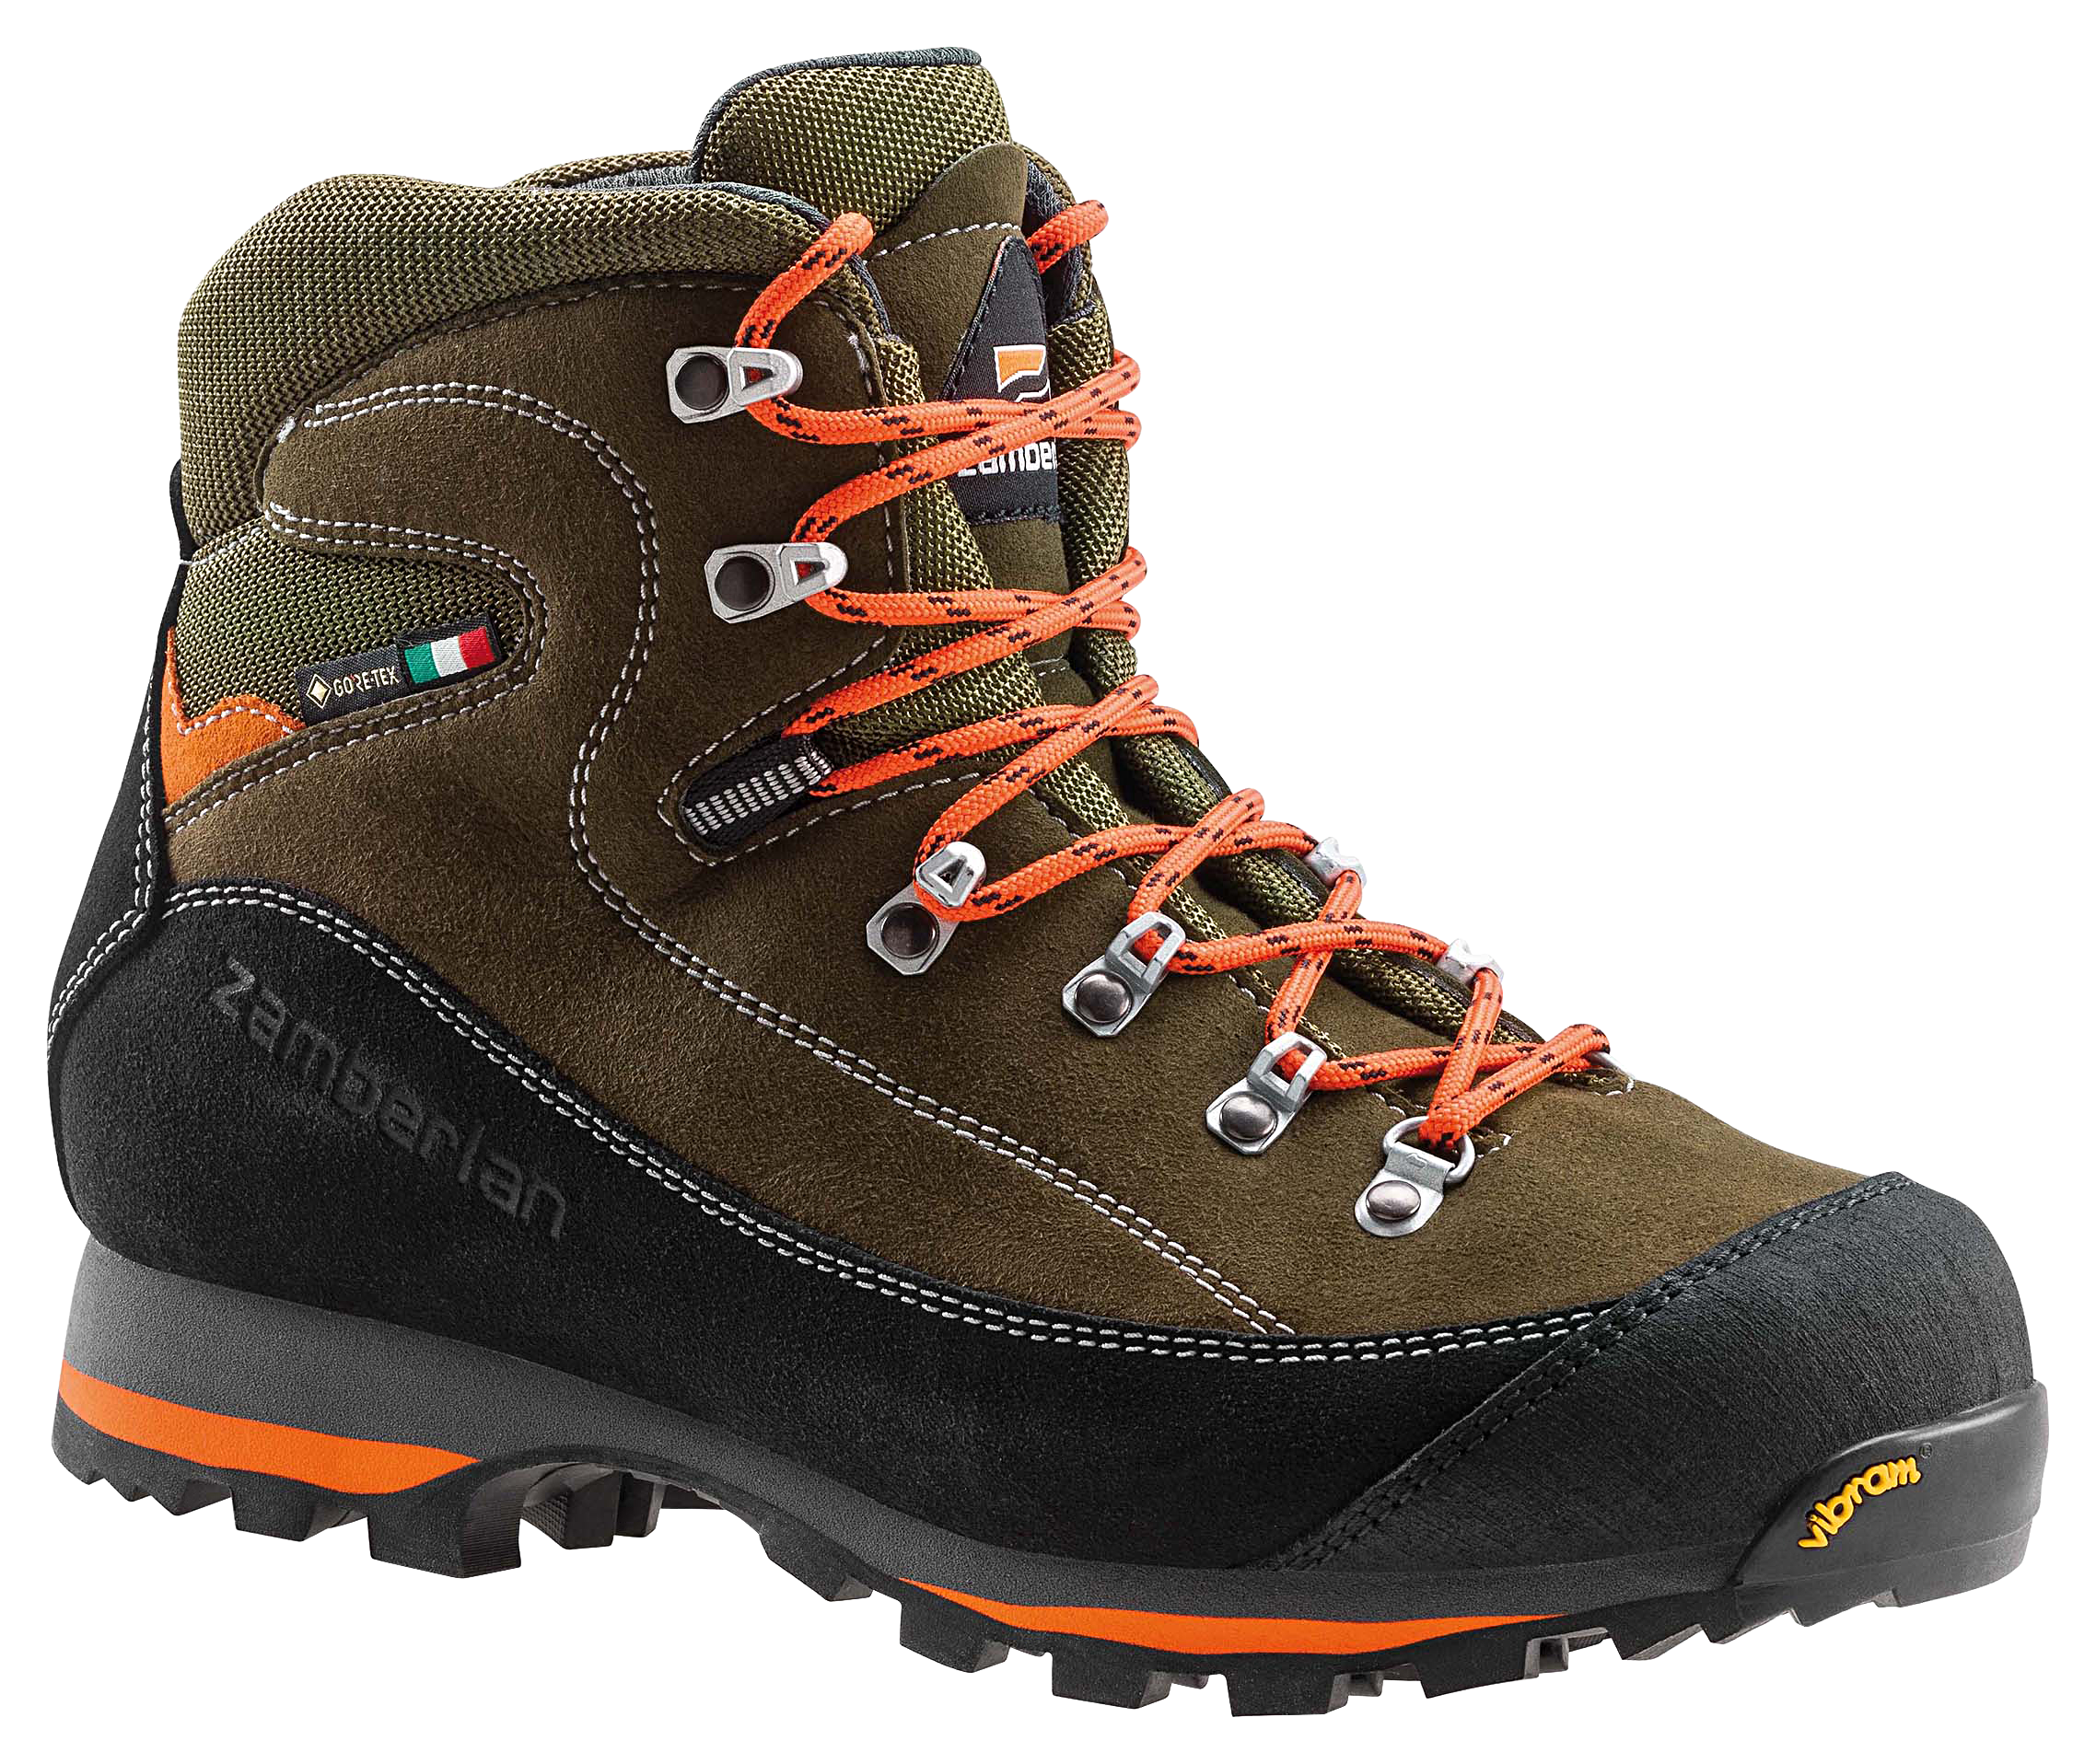 Zamberlan 700 Sierra GTX Waterproof Hunting Boots for Men - Forest - 10M